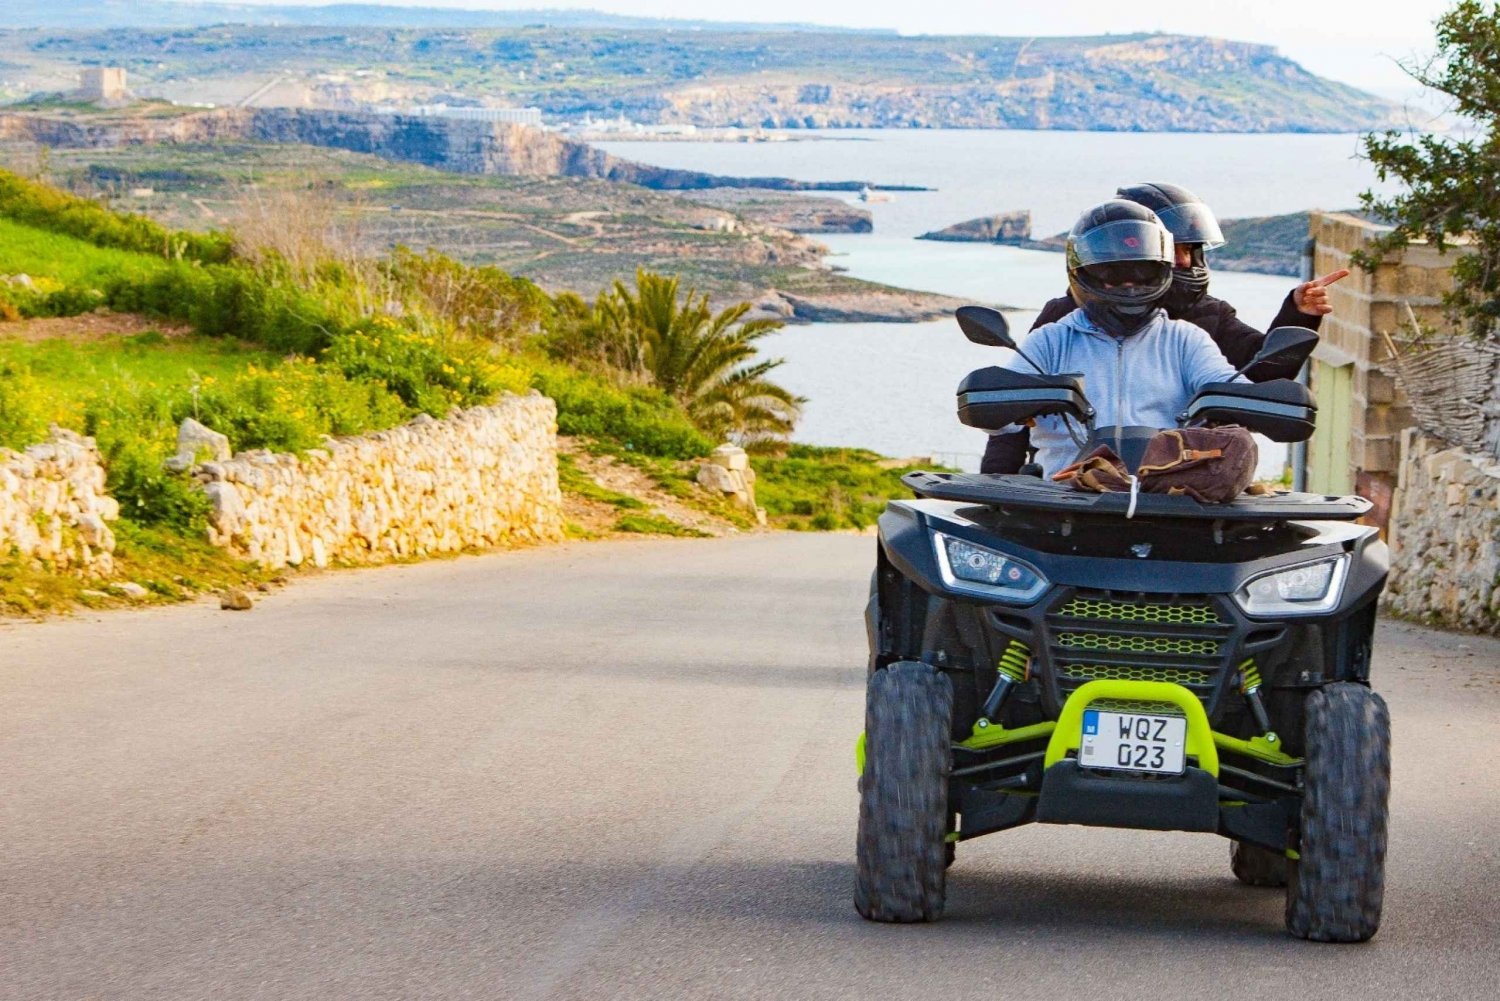 Fra Malta: Gozo heldags quadbike-tur med frokost og båd